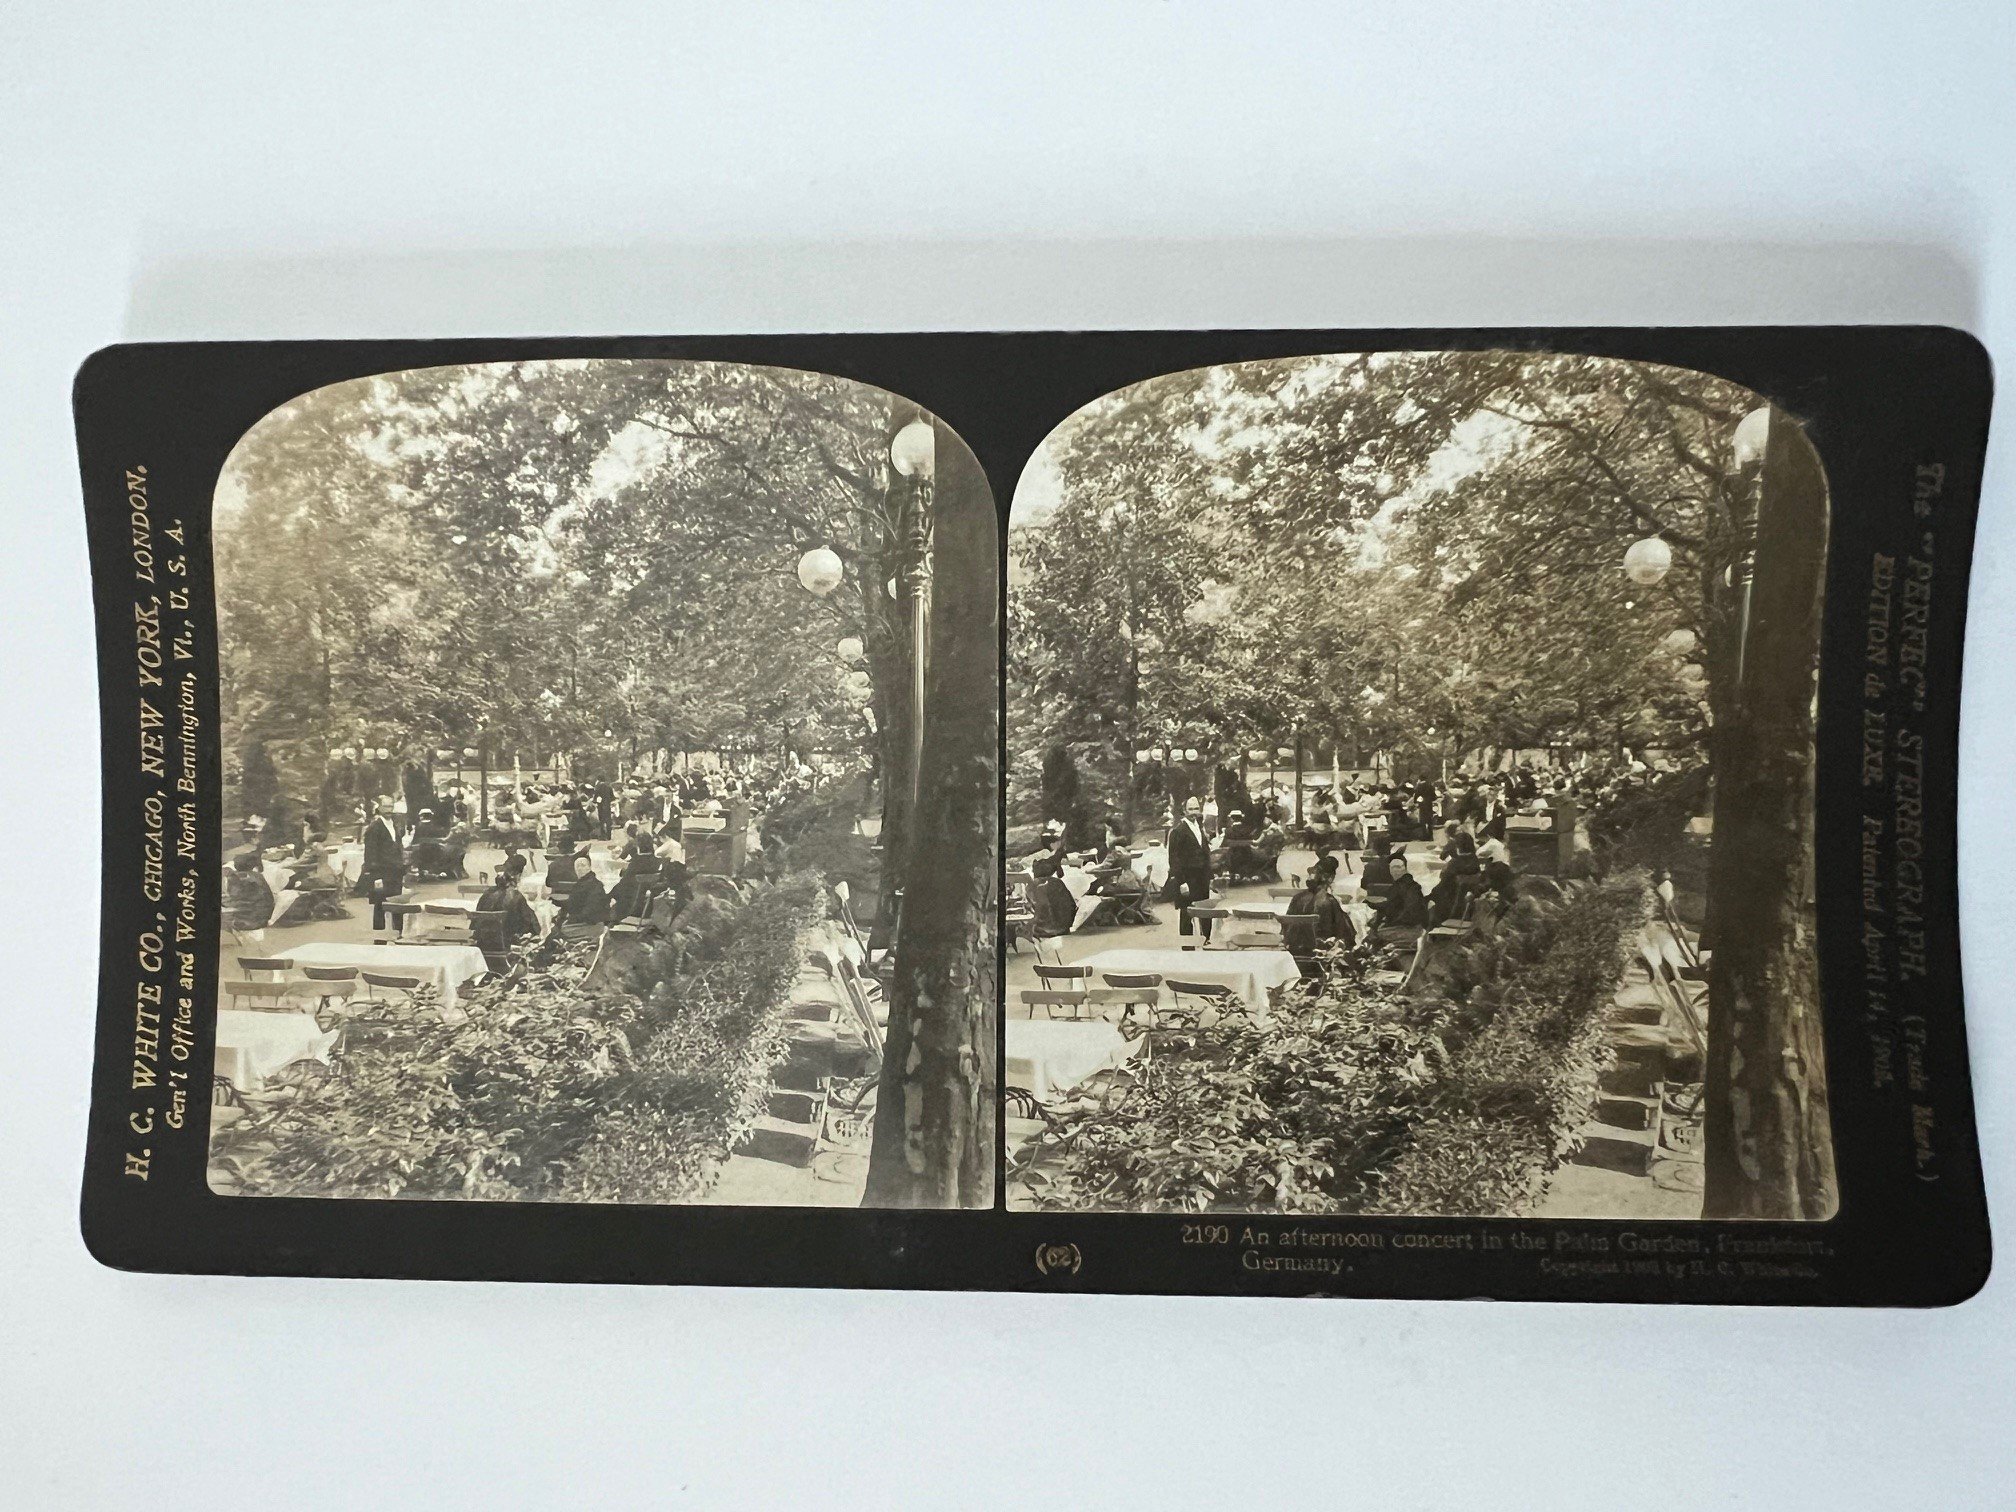 Stereobild, H. C. White, Frankfurt, Nr. 2190, An afternoon concert in the Palm Garden, ca. 1910. (Taunus-Rhein-Main - Regionalgeschichtliche Sammlung Dr. Stefan Naas CC BY-NC-SA)